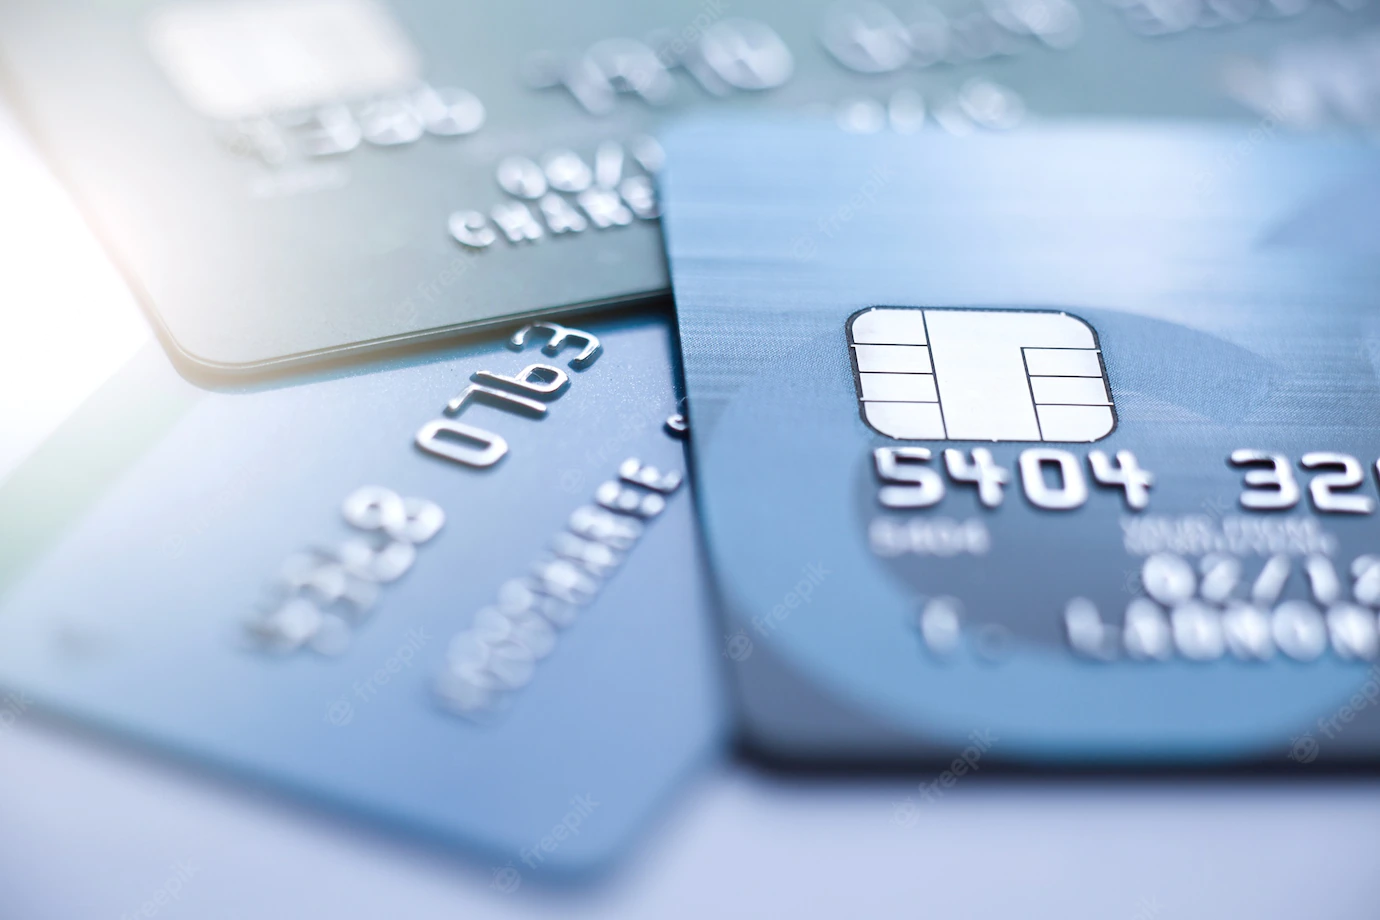 Сбербанк начал "выковыривать" чипы из старых банковских карт, чтобы выпускать новые